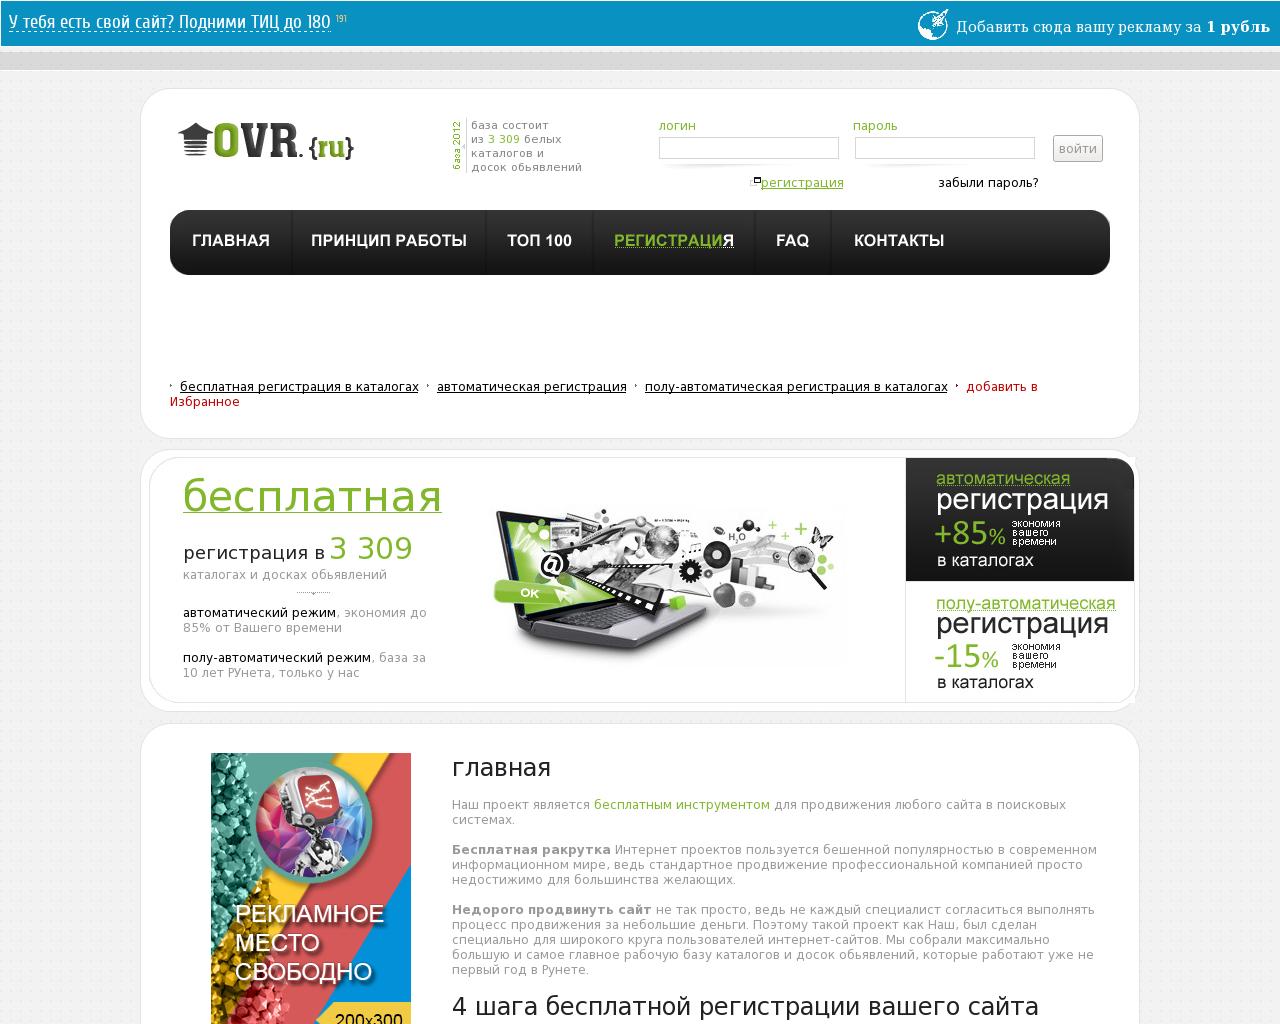 Изображение сайта 0vr.ru в разрешении 1280x1024